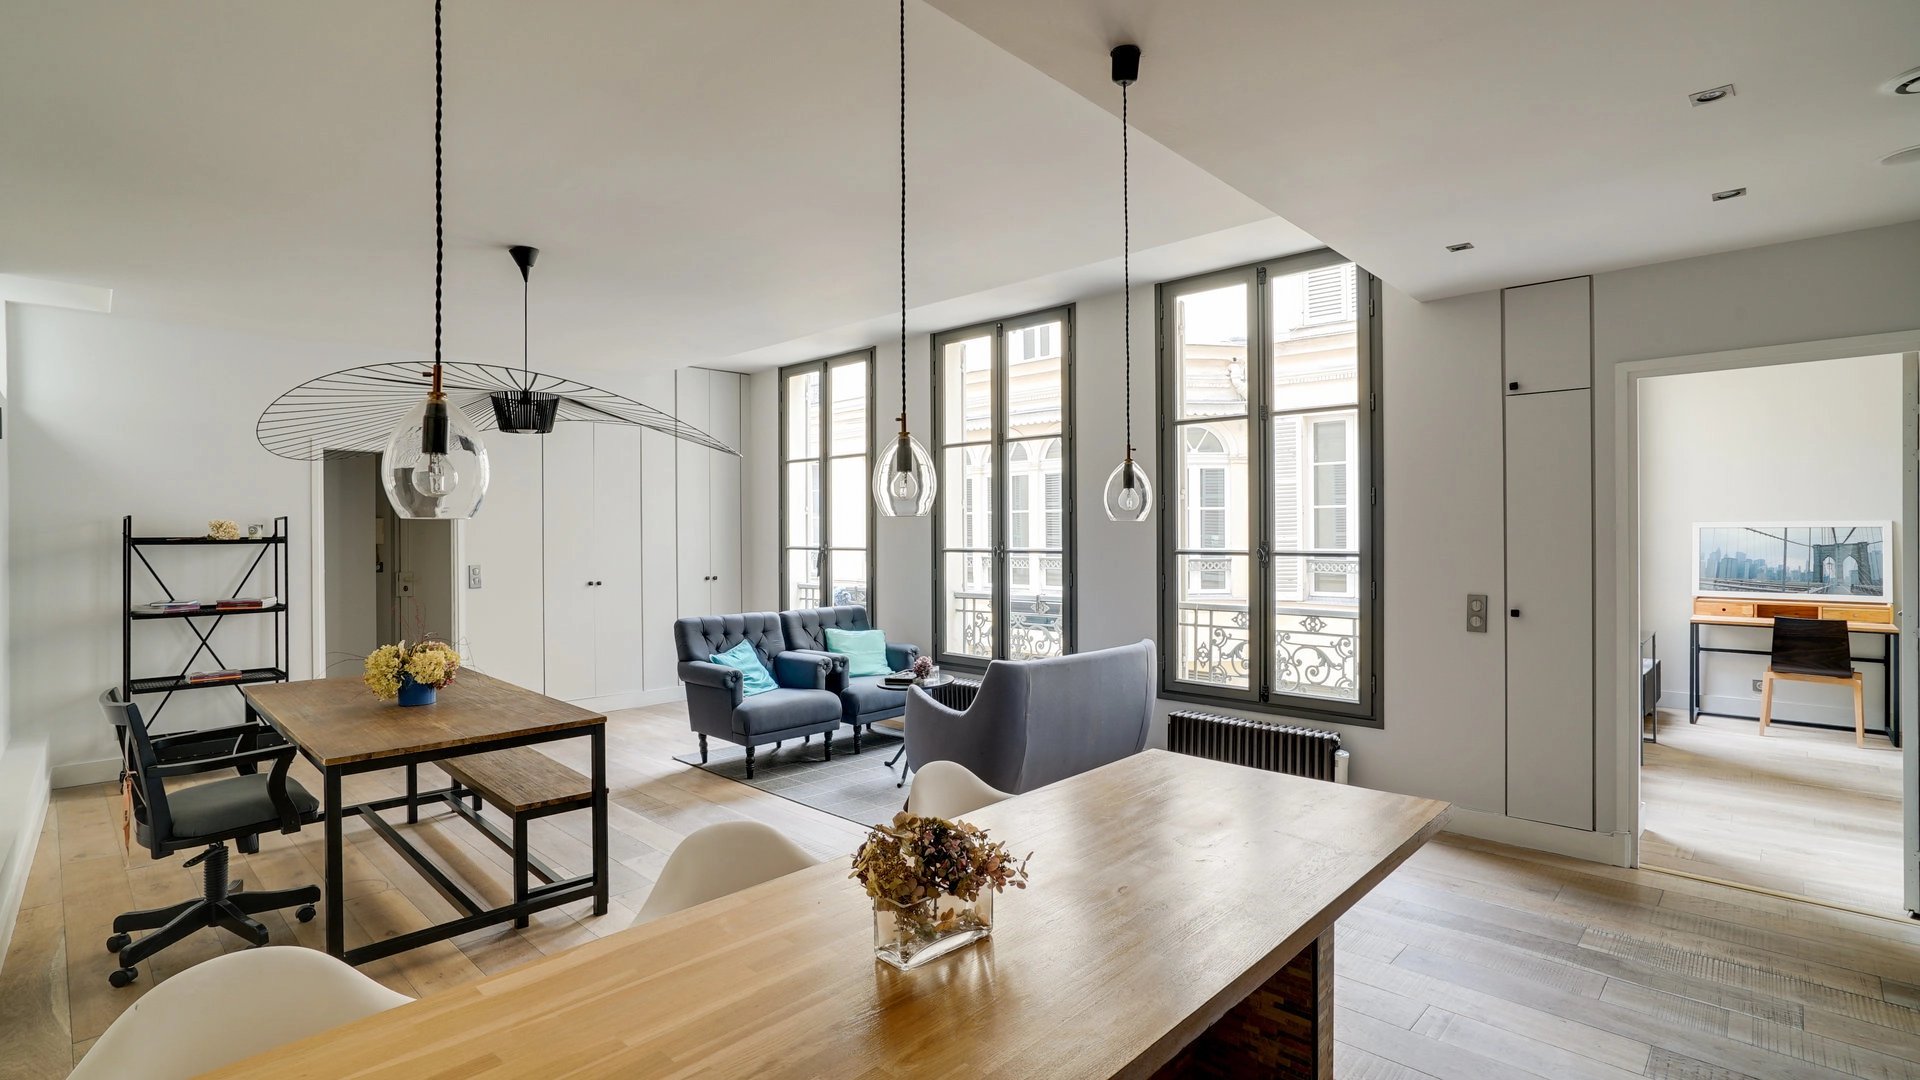 Sale Apartment - Paris 6th (Paris 6ème) Saint-Germain-des-Prés